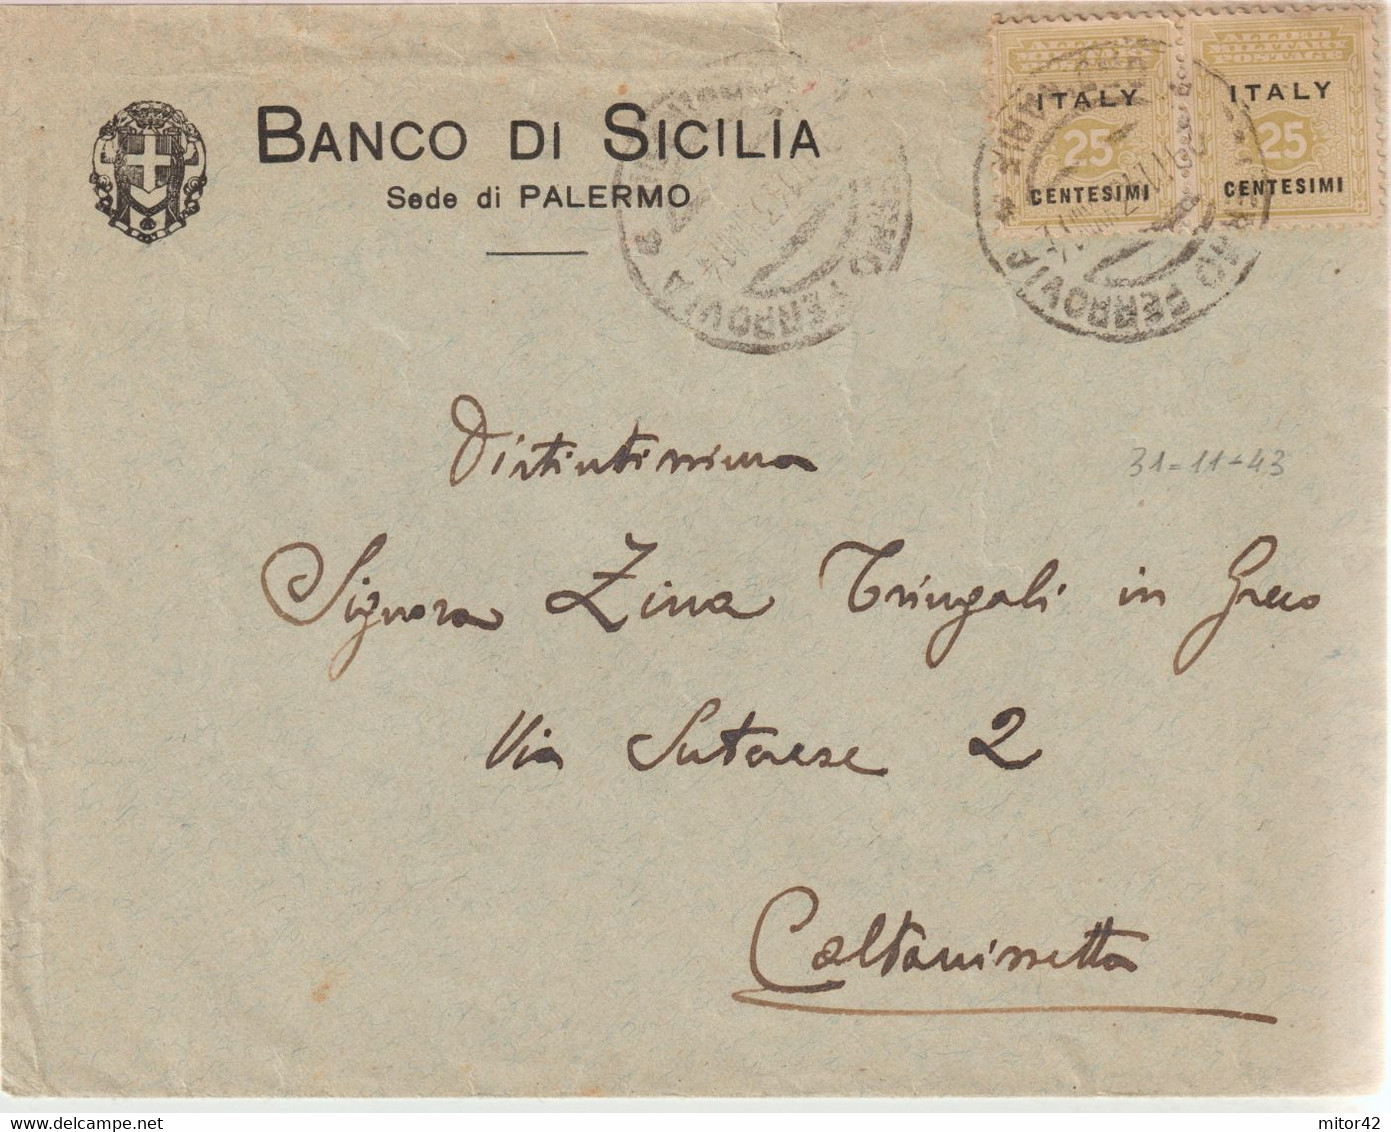 140-Amgot-Occupazione Alleata Sicilia-Busta Intestata Banco Di Sicilia-Palermo-coppia 25c-x Caltanissetta. - Anglo-american Occ.: Sicily